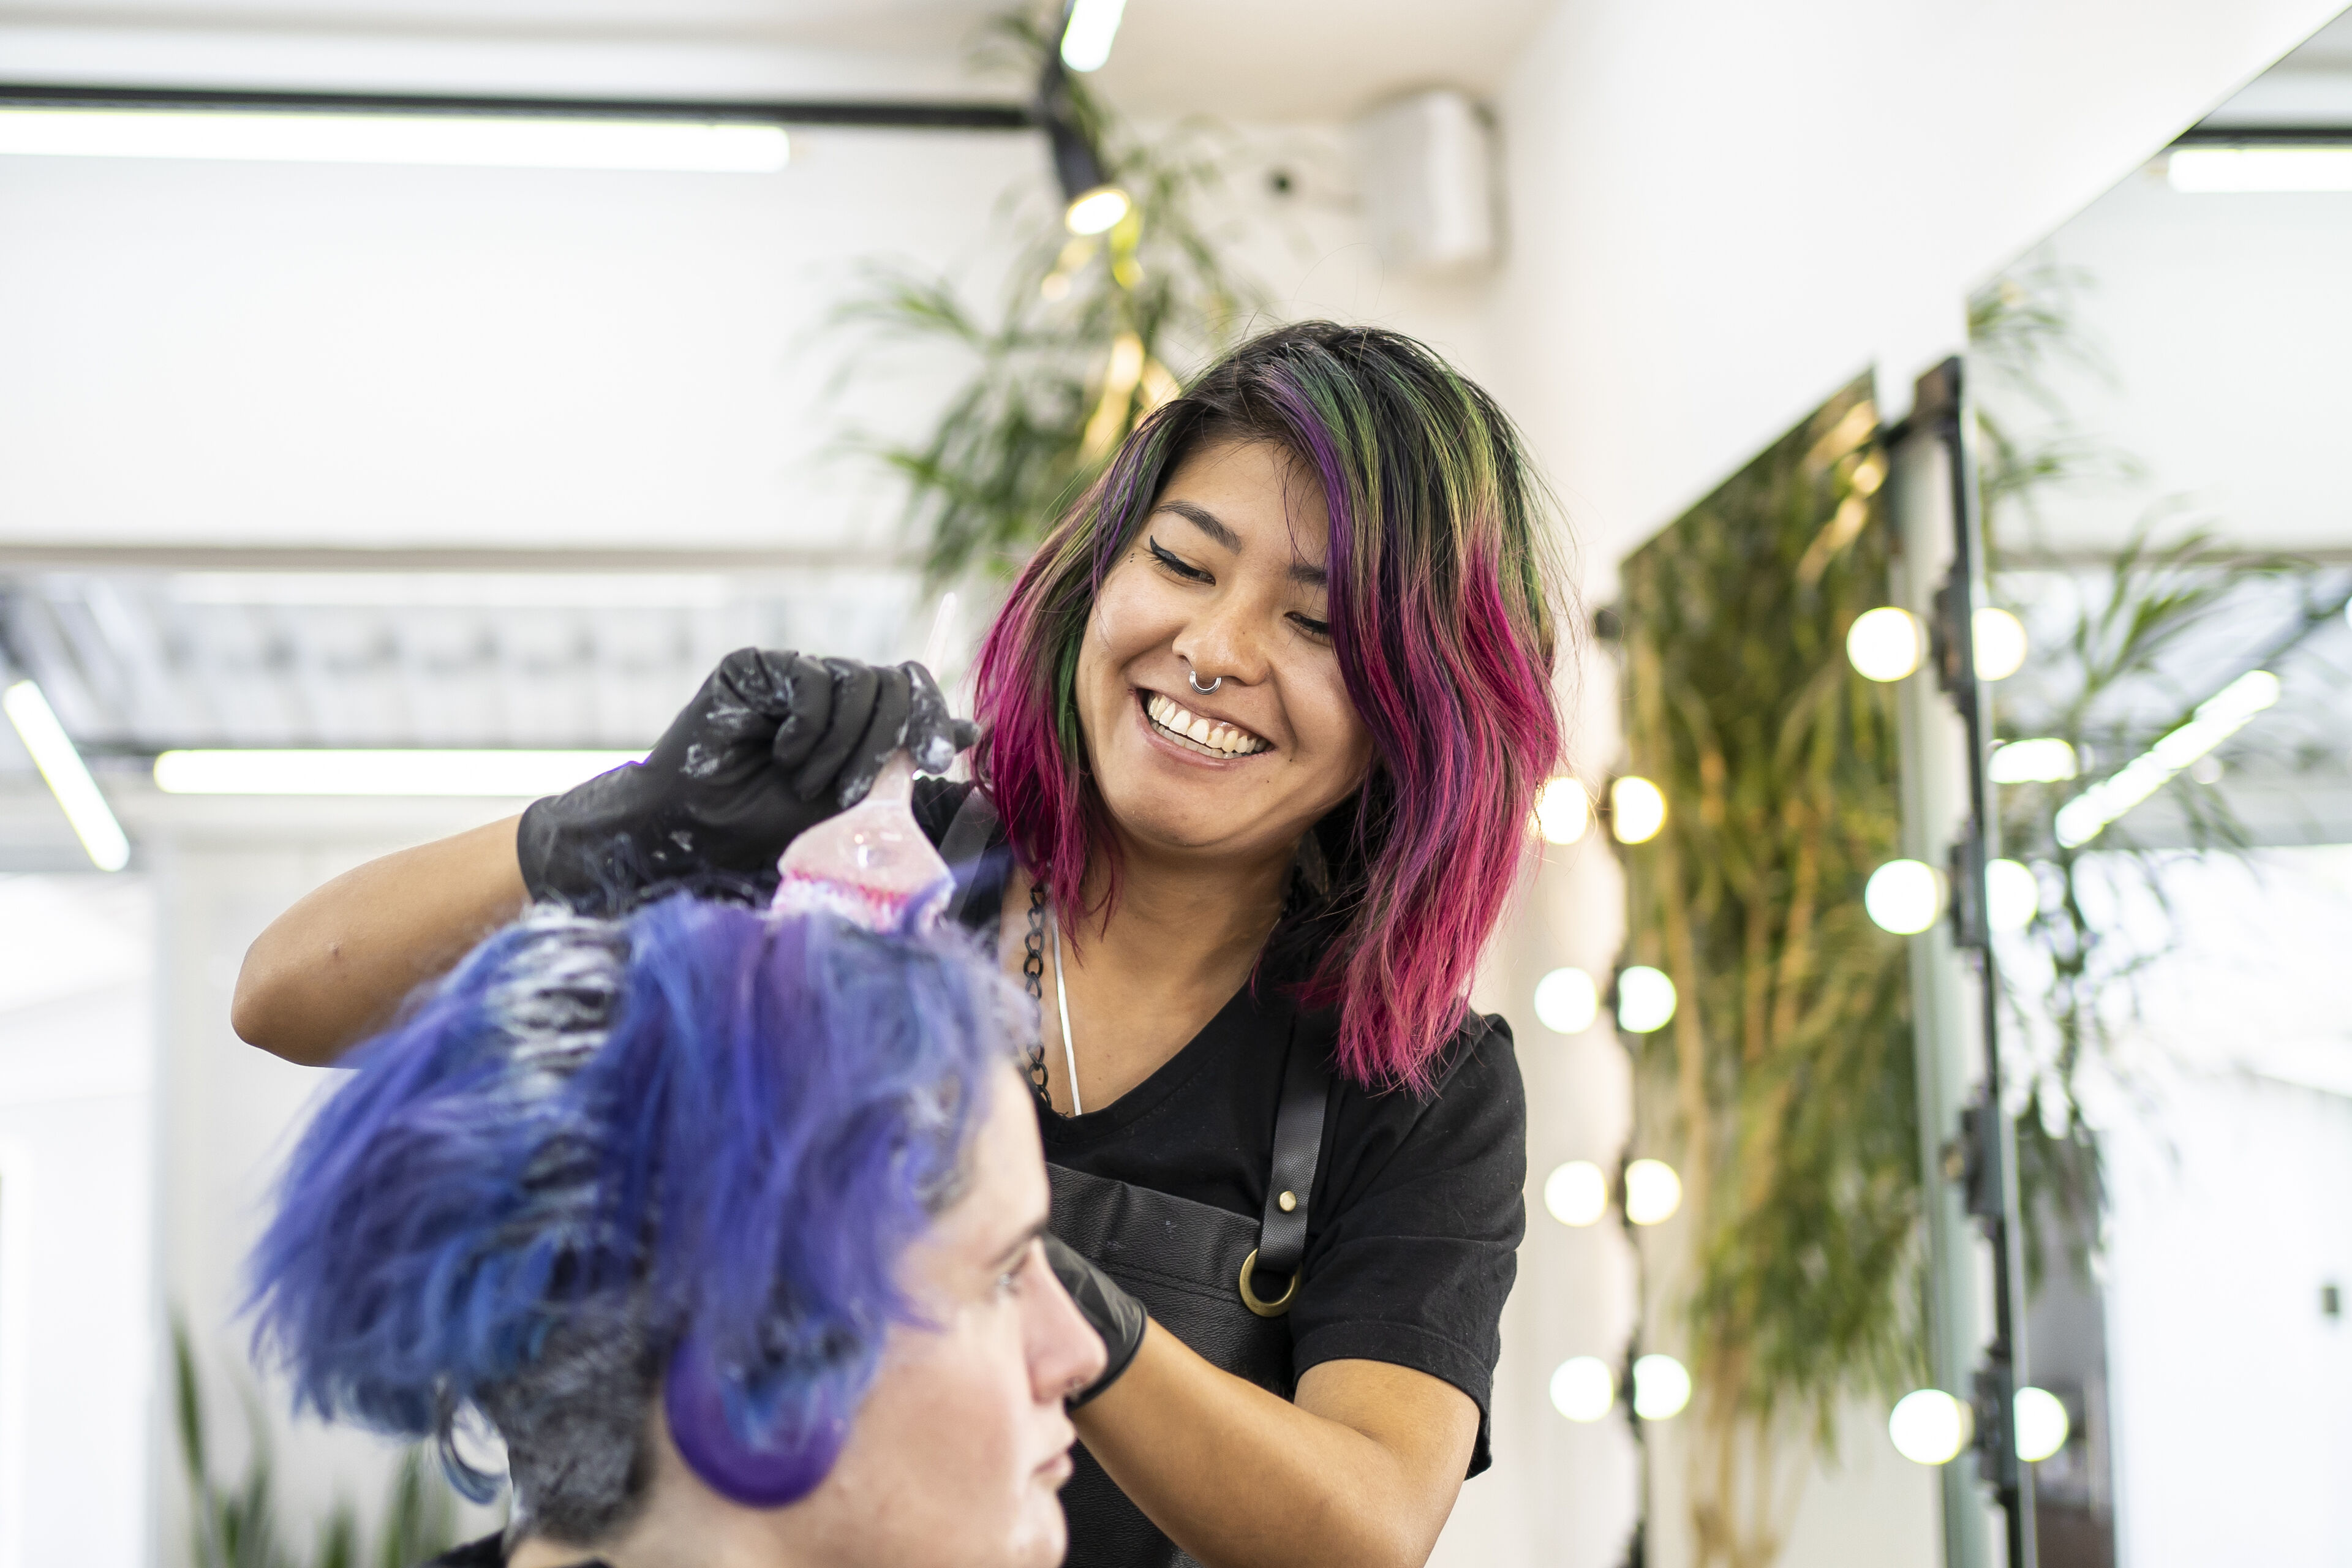 Una colorista de cabello sonriente con cabello rosa vibrante aplica tinte al cabello azul de un cliente en una peluquería iluminada.